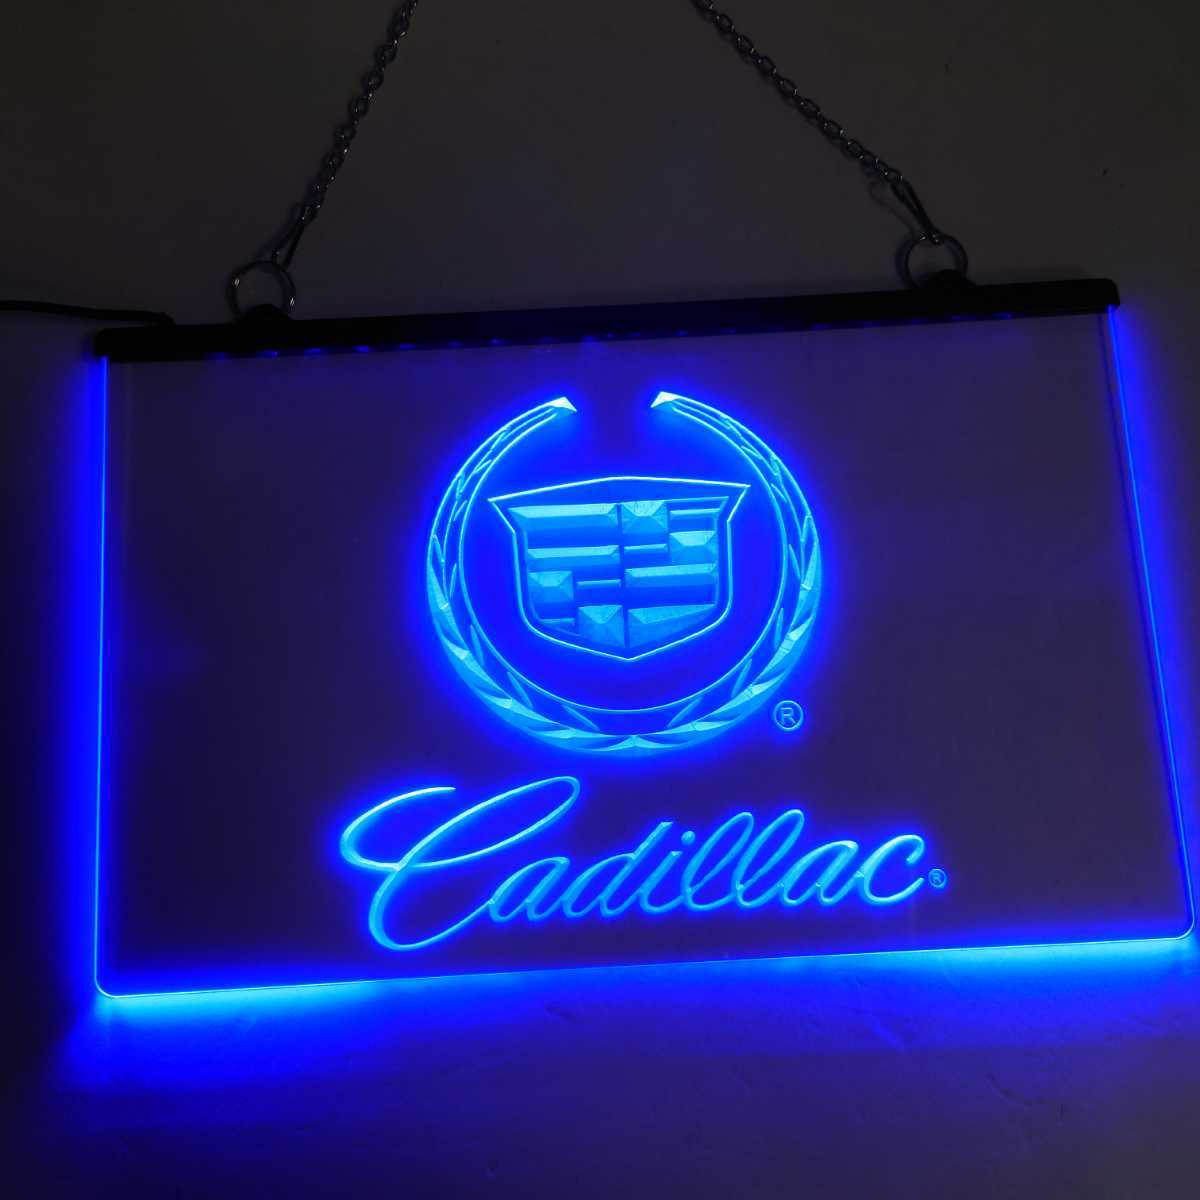 No.NE21B 送料無料 キャデラック Cadillac LED ネオン 看板 外車 アメ車 ローライダー LOWRIDER _画像3